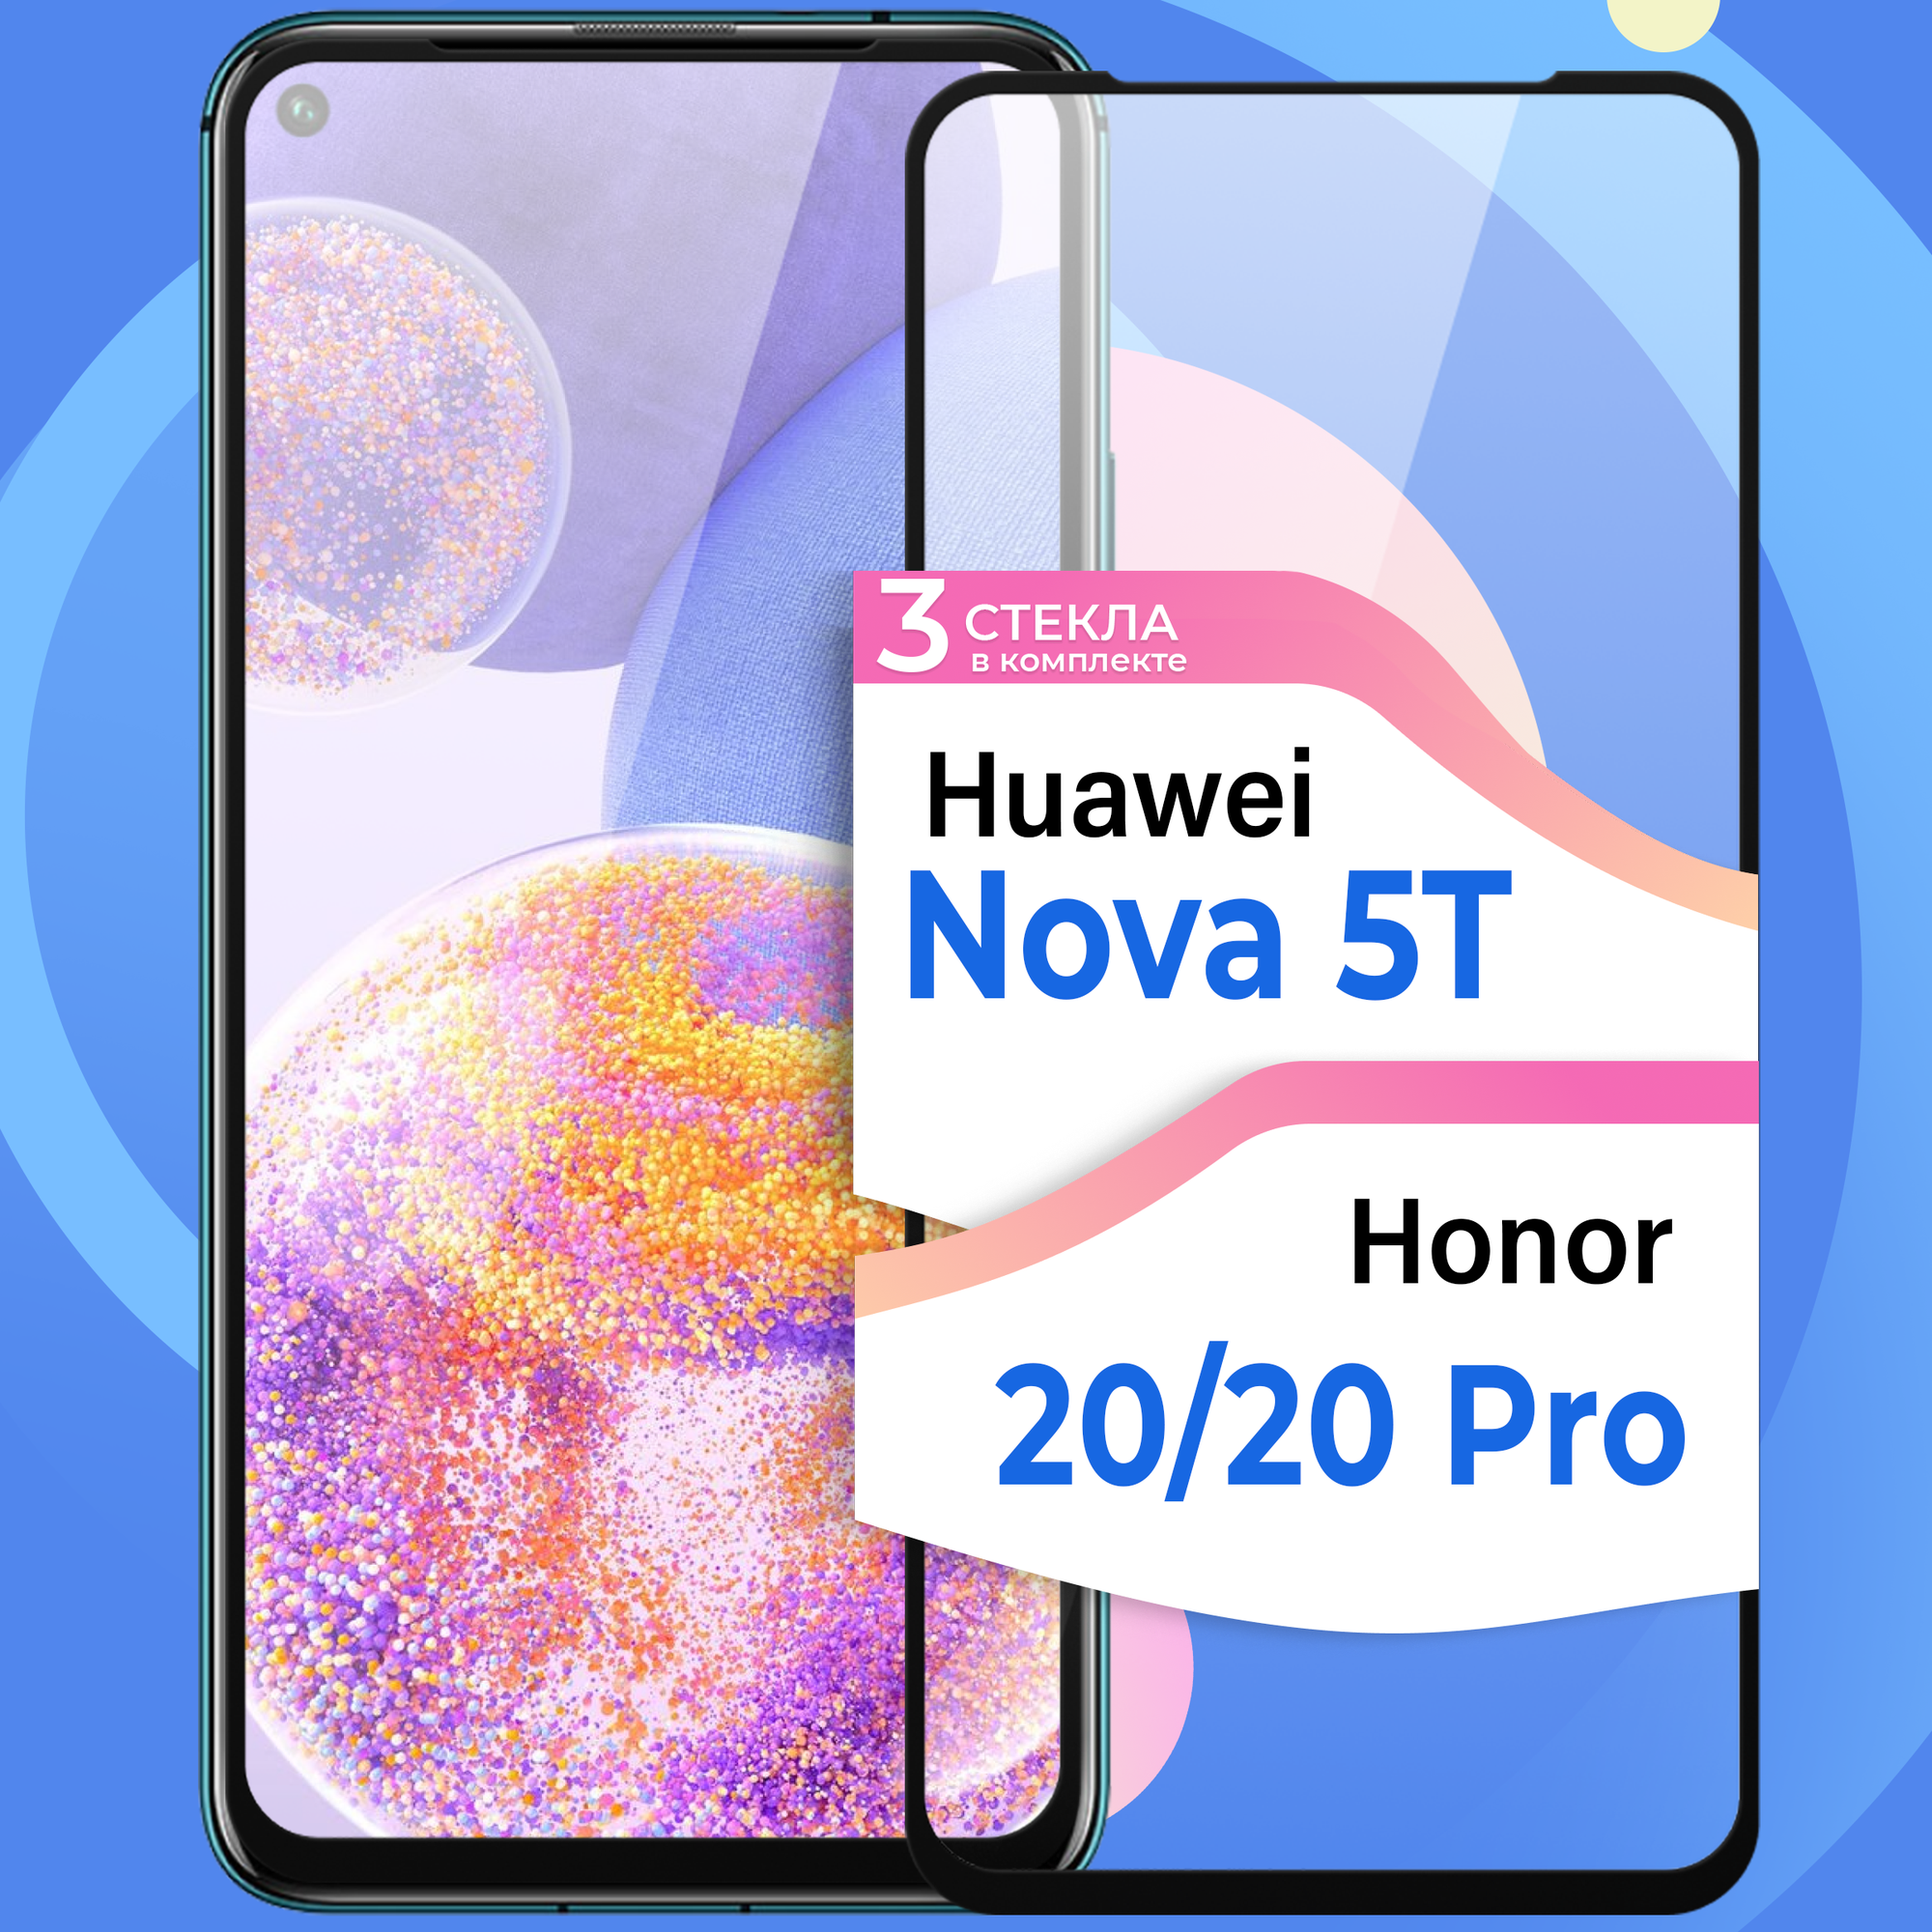 Комплект 2 шт. Противоударное стекло для смартфона Huawei Nova 5T Honor 20 и Honor 20 Pro / Стекло на смартфон Хуавей Нова 5Т Хонор 20 и 20 Про